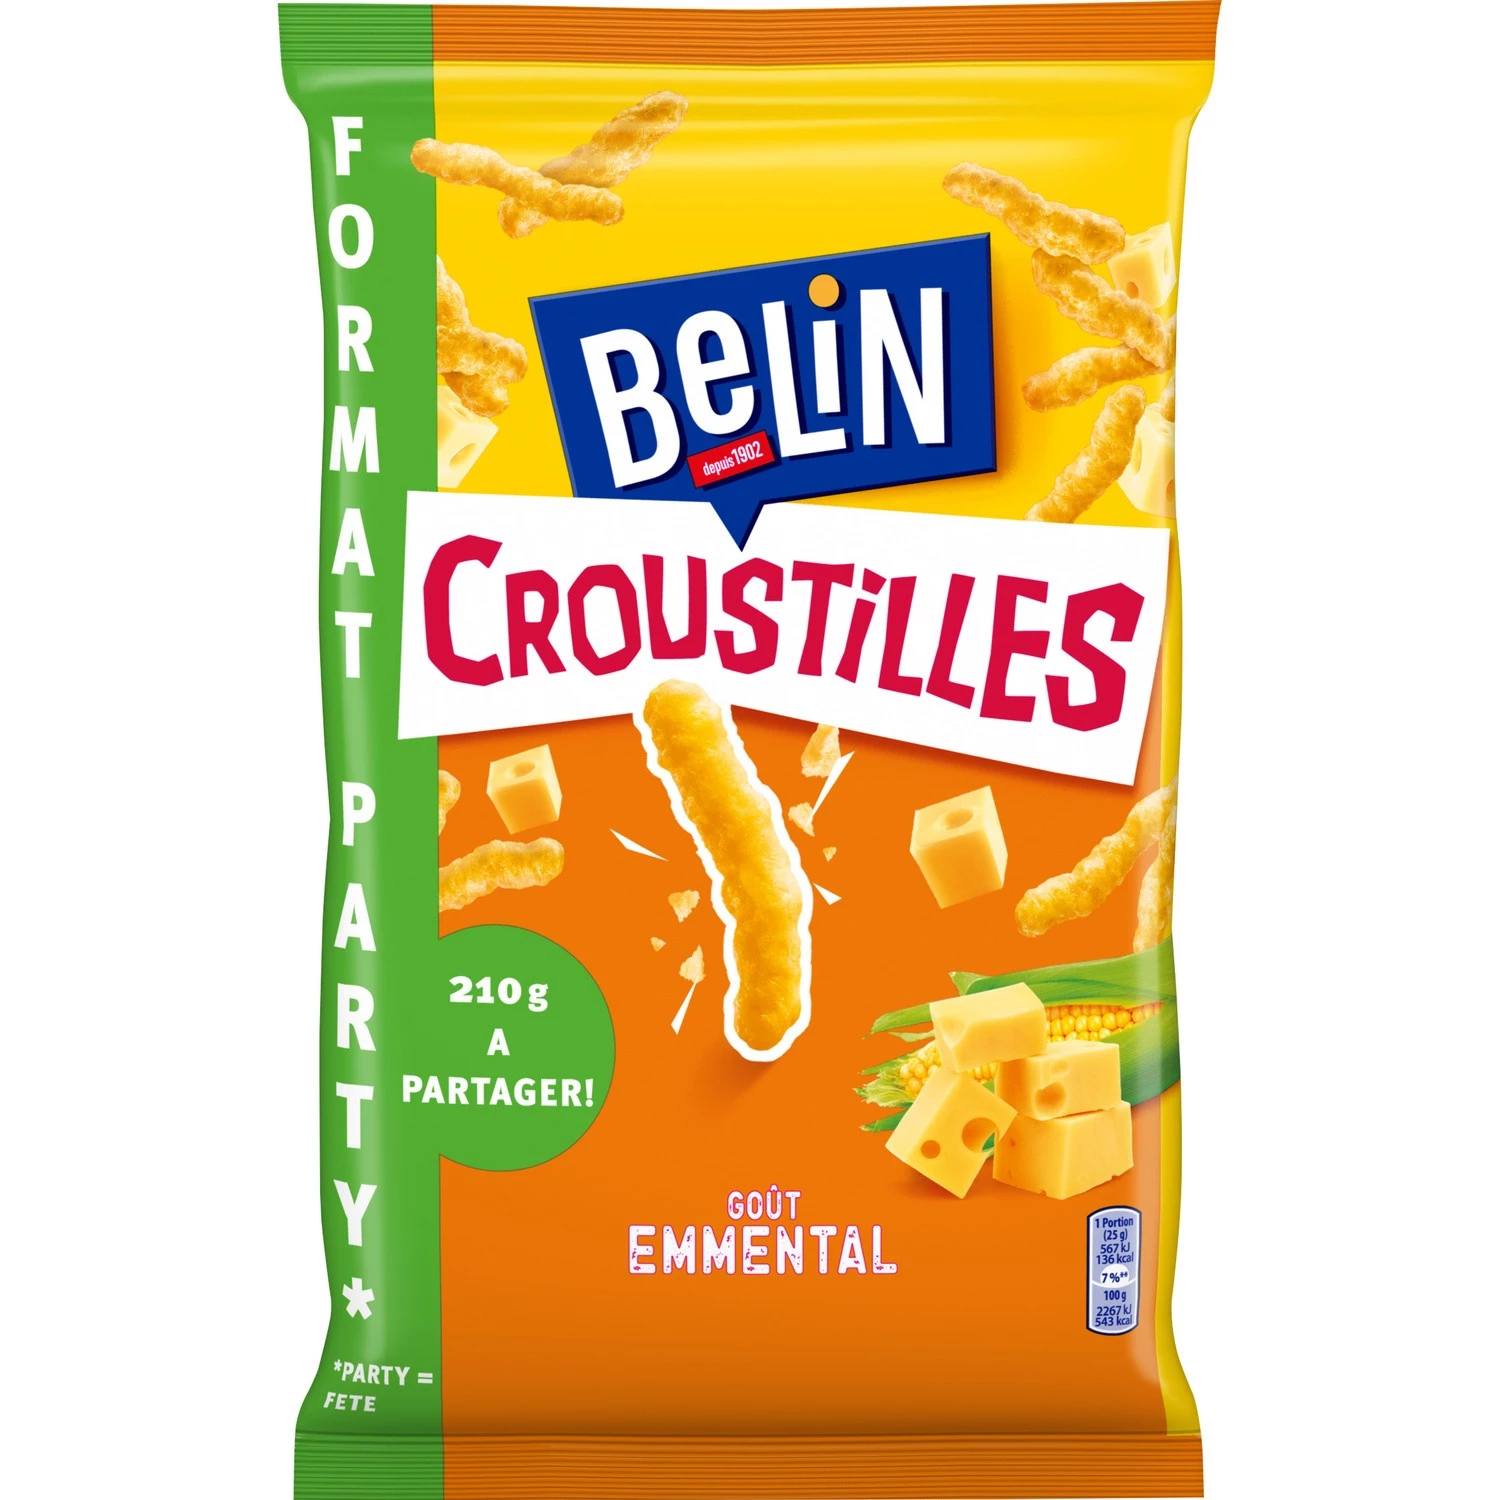 Печенье Croustil Aperitif со вкусом Эмменталя, 210г - BELIN